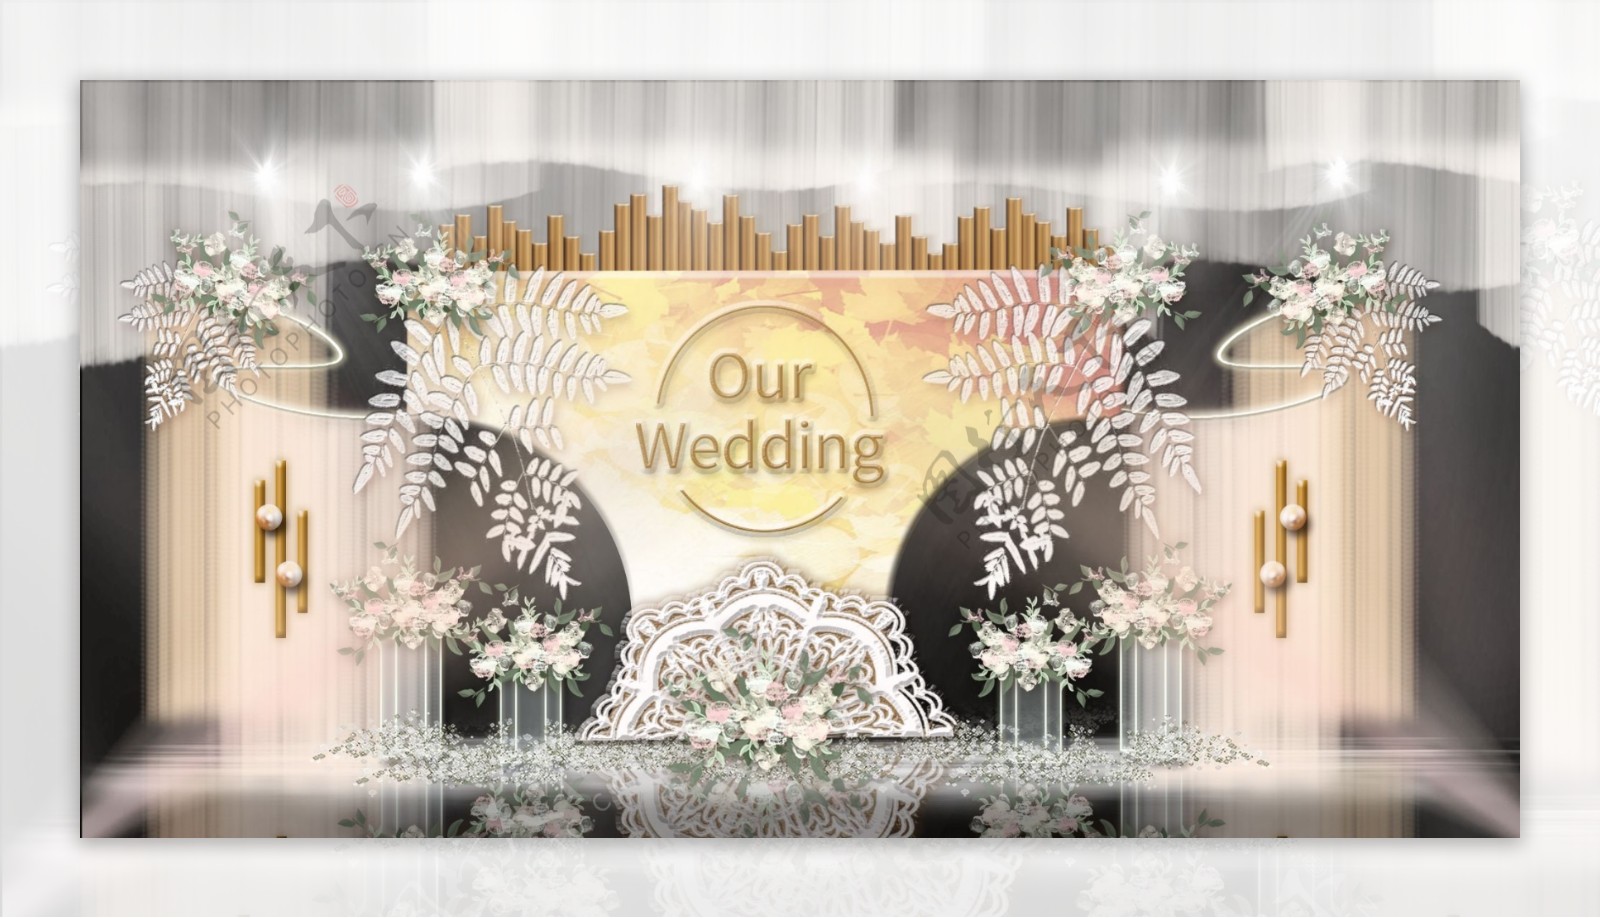 沙漏型舞台弧形帷幕纱幔垂吊叶子婚礼效果图